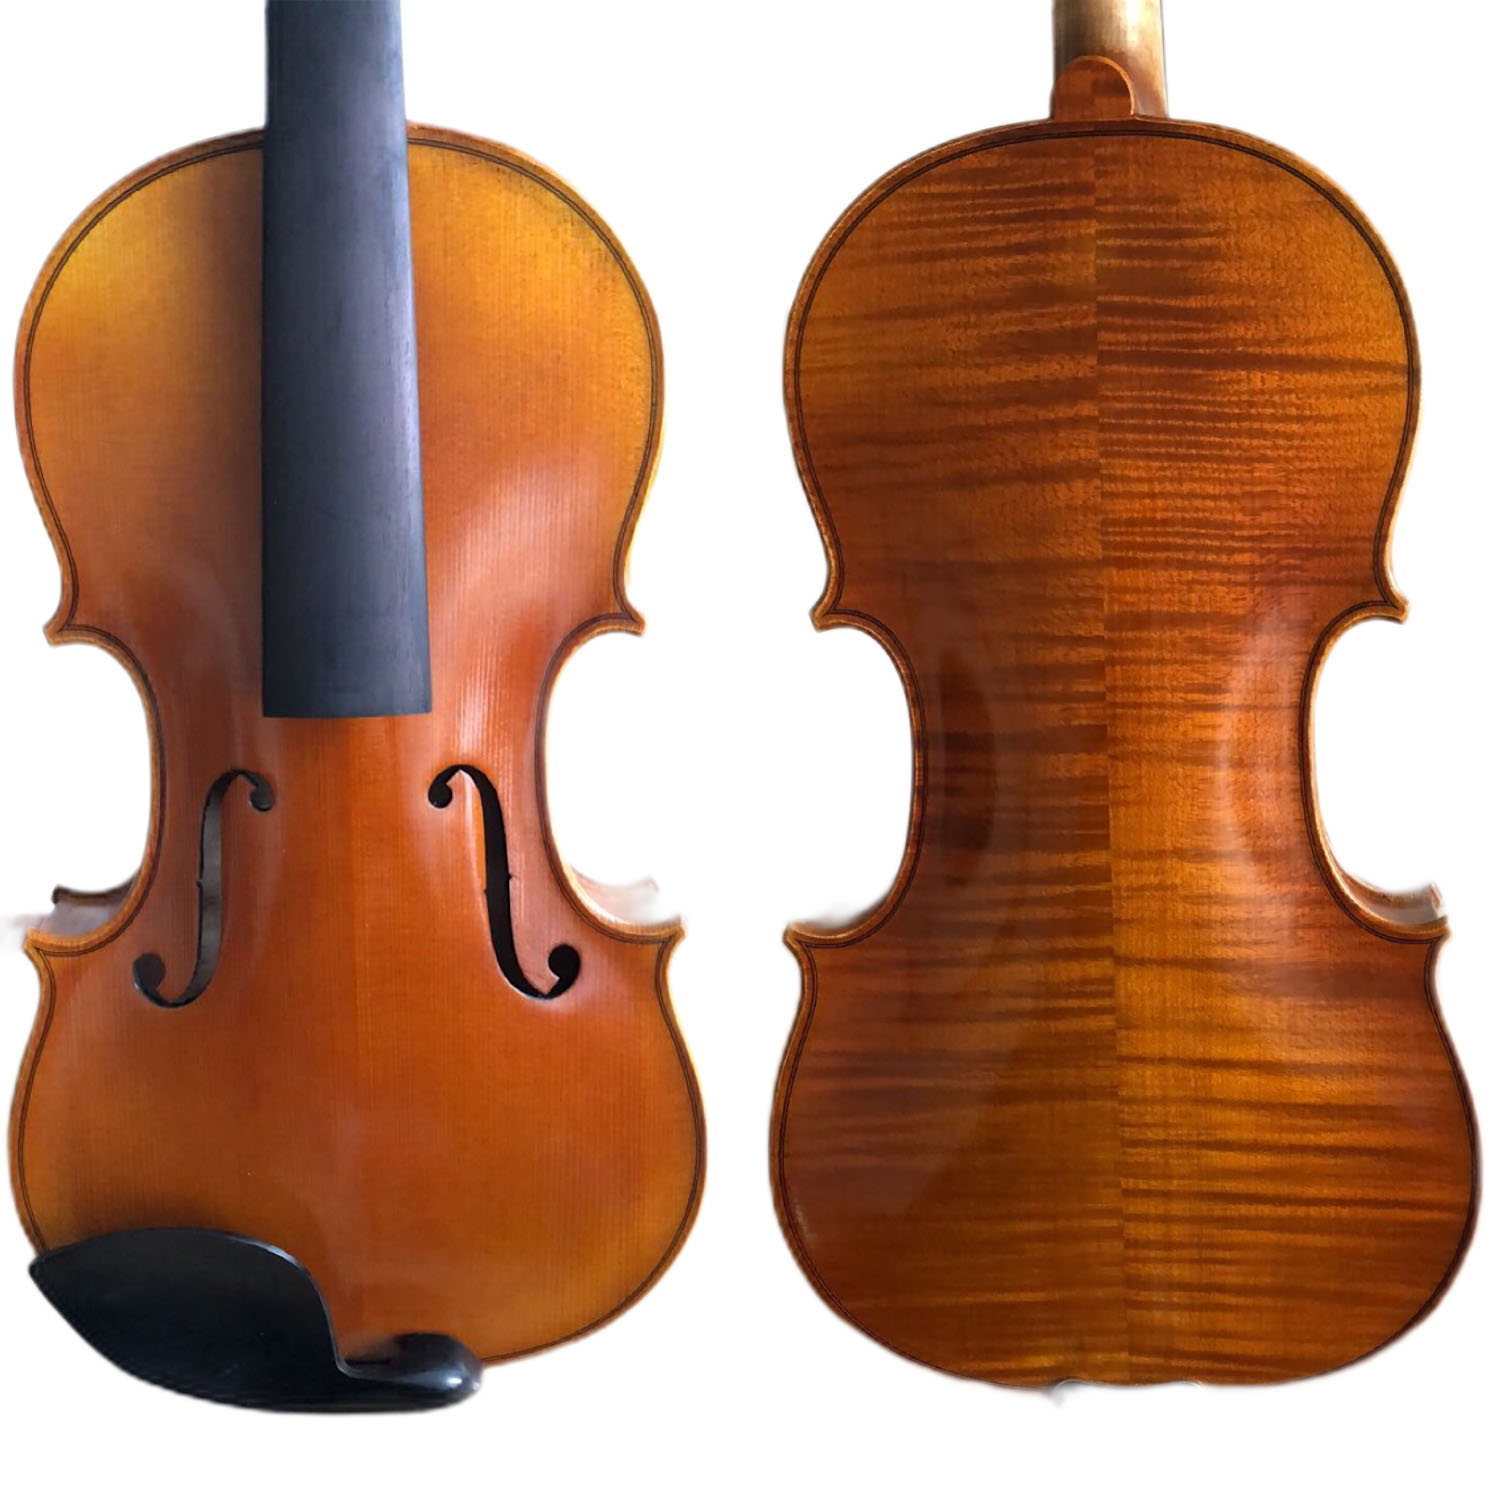 Viola totalmente hecha a mano con ajuste de ébano están disponibles diferentes colores 